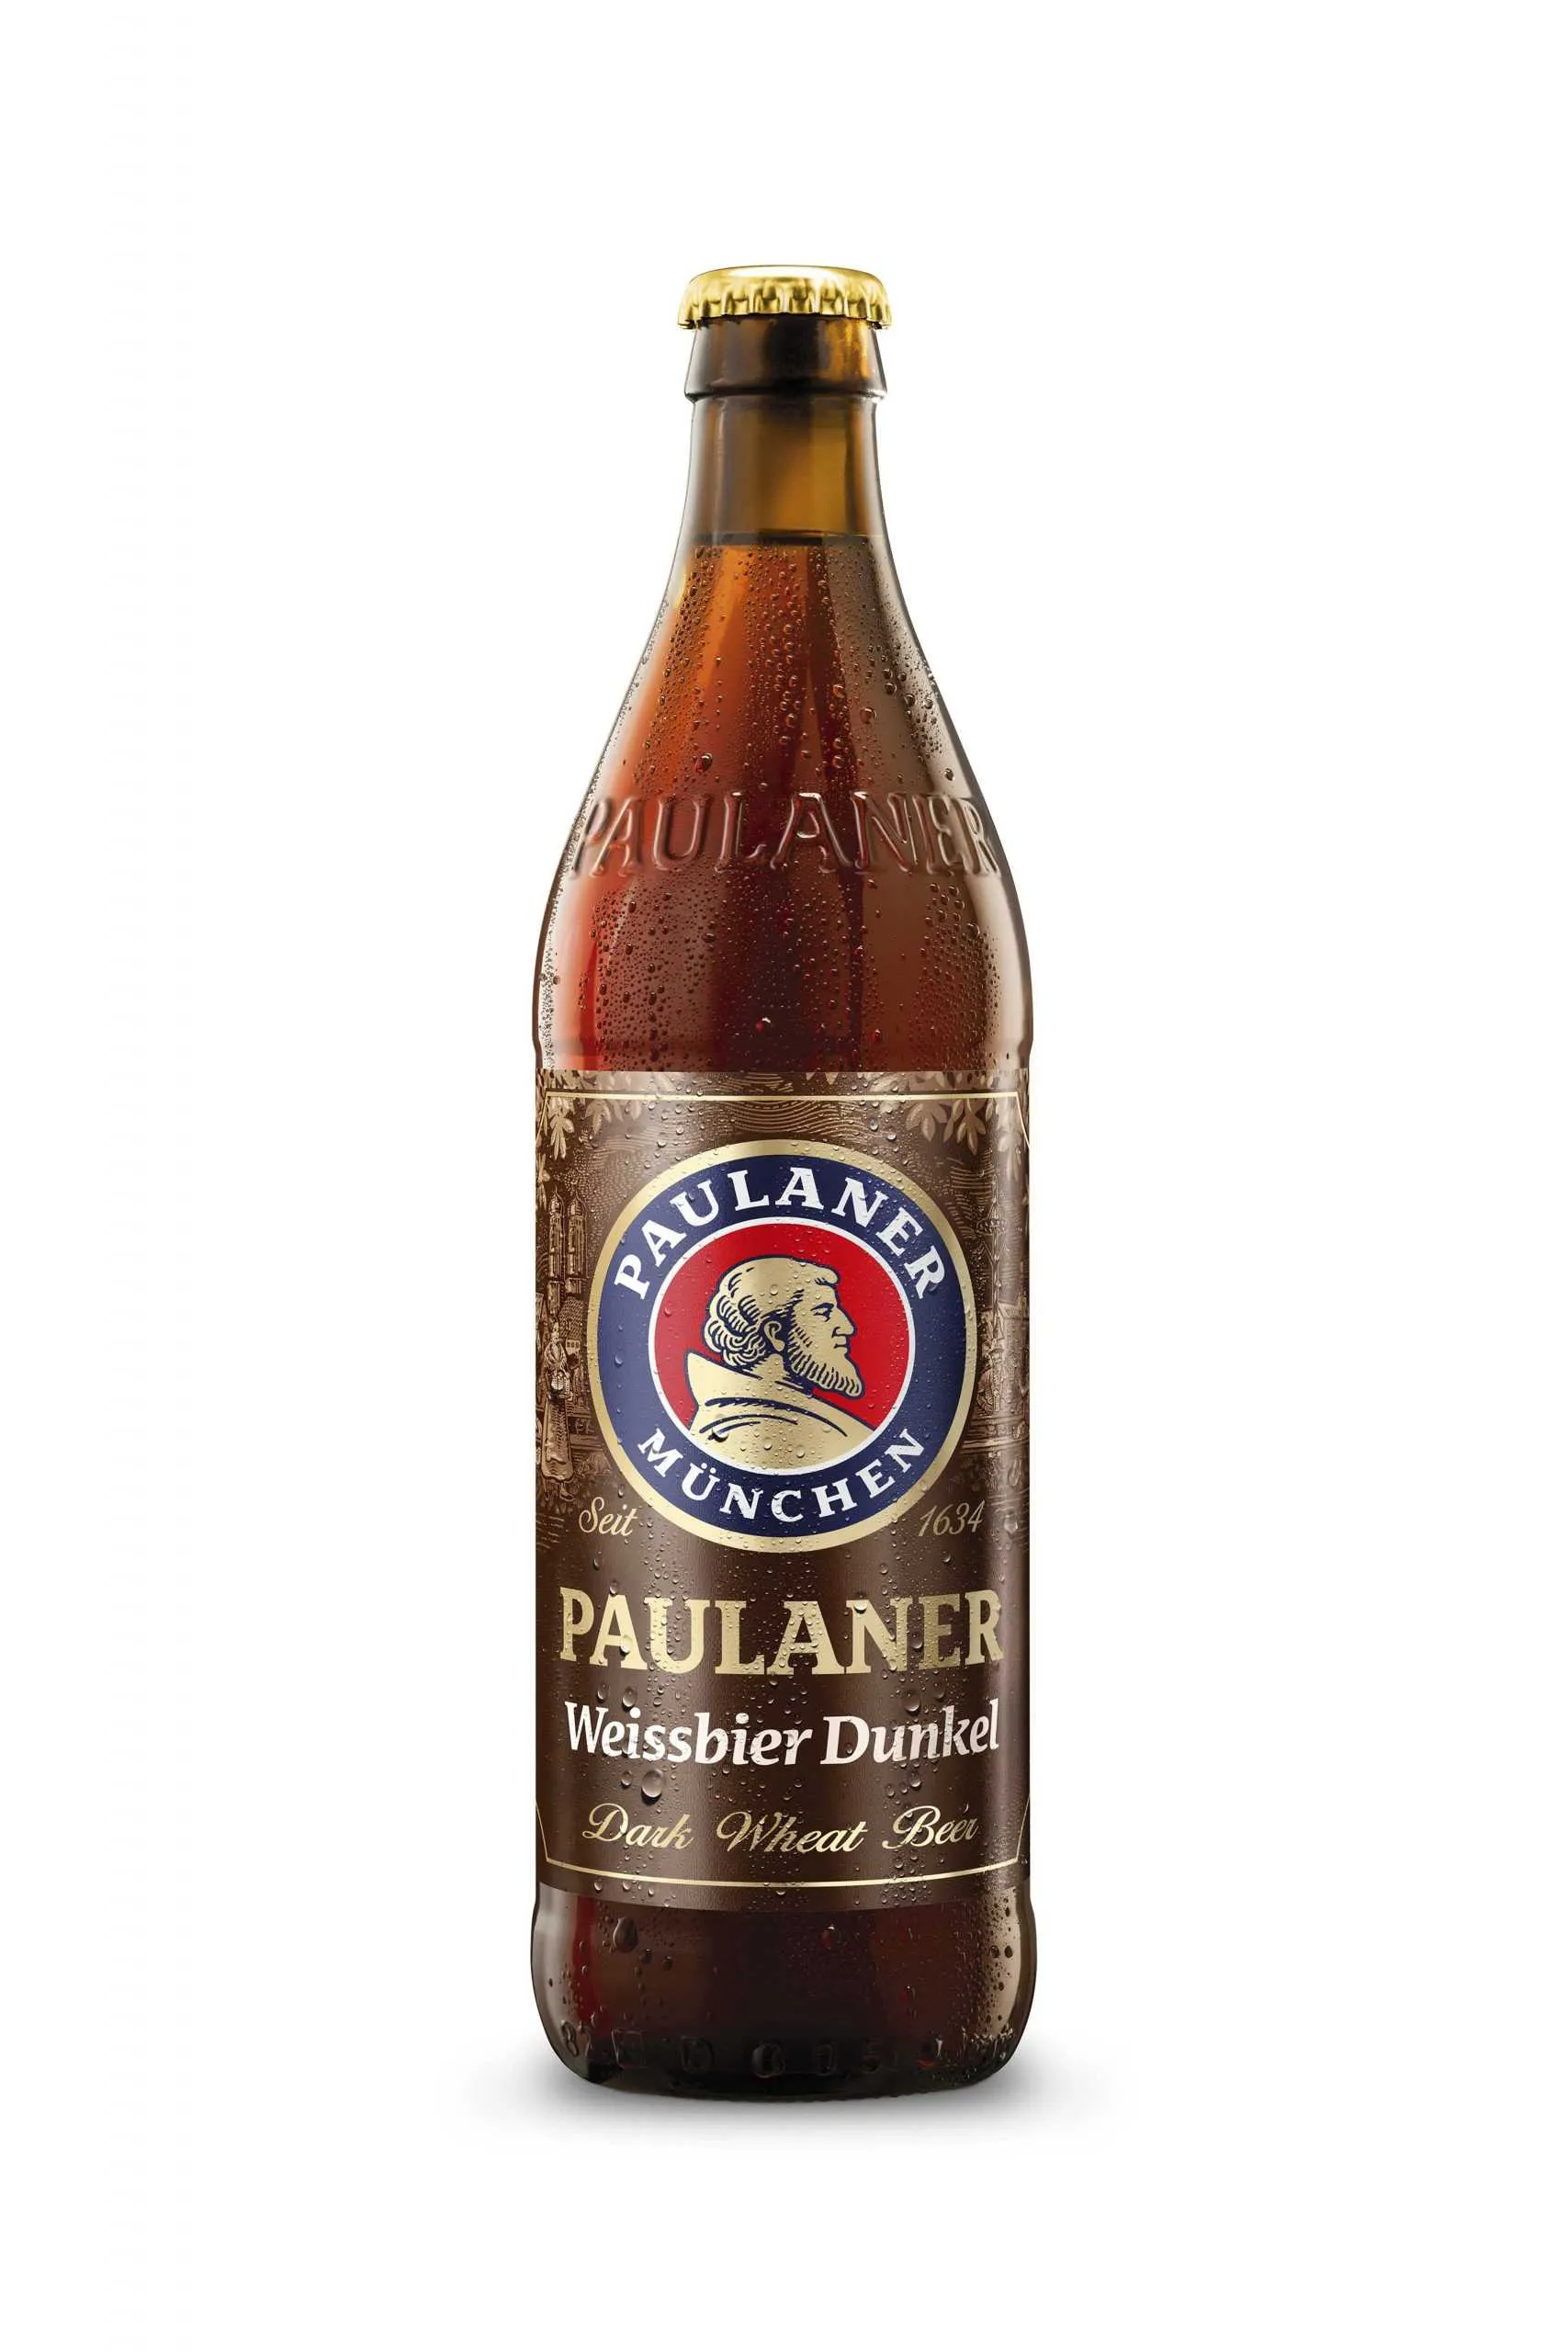 Пиво Паулайнер Хефе Вайсбир Дункель н/ф 5,3% с/т 0,5 л (Германия)